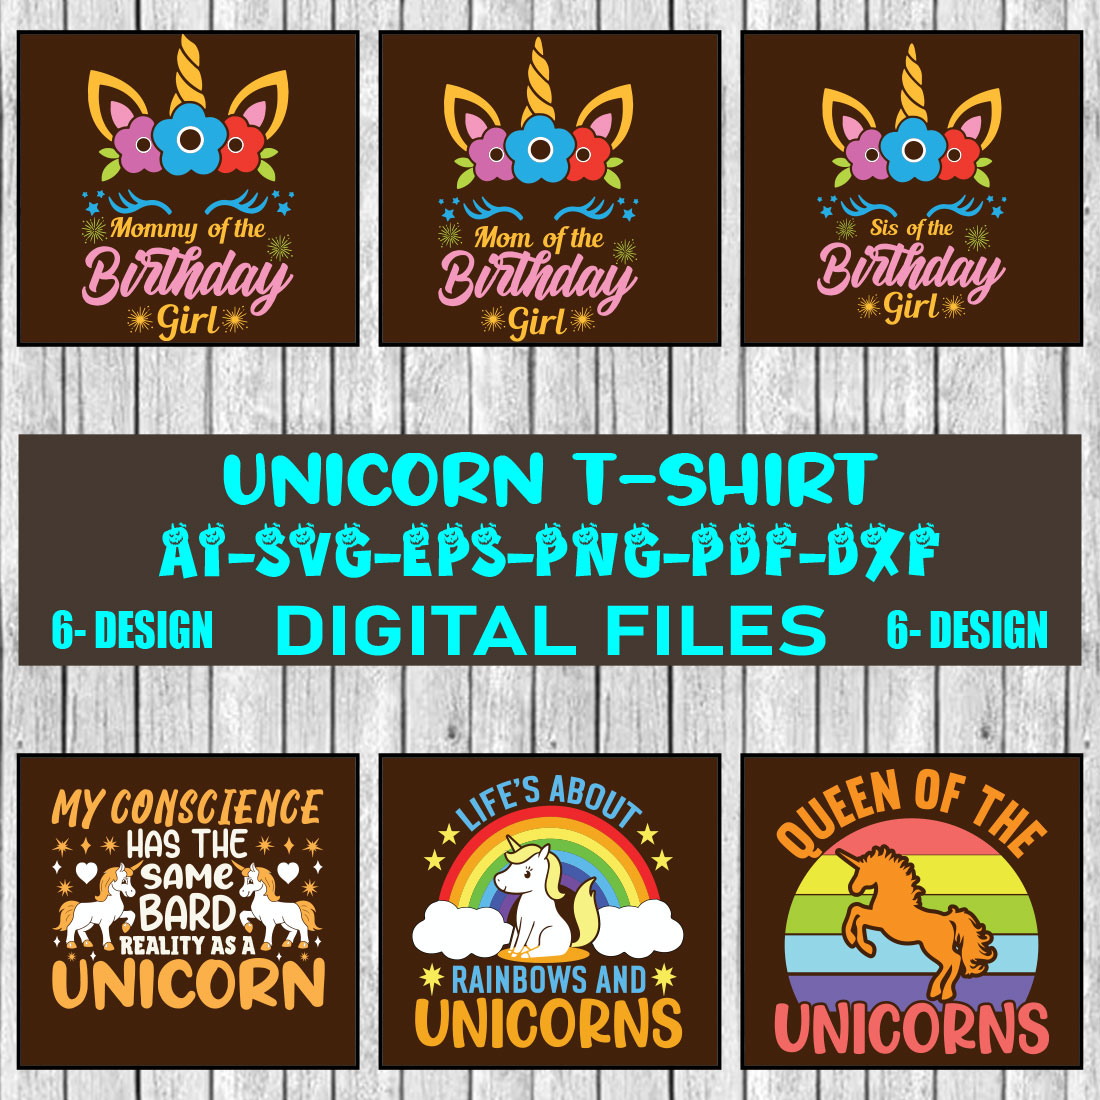 Unicorn T-shirt Design Bundle Vol-3 cover image.